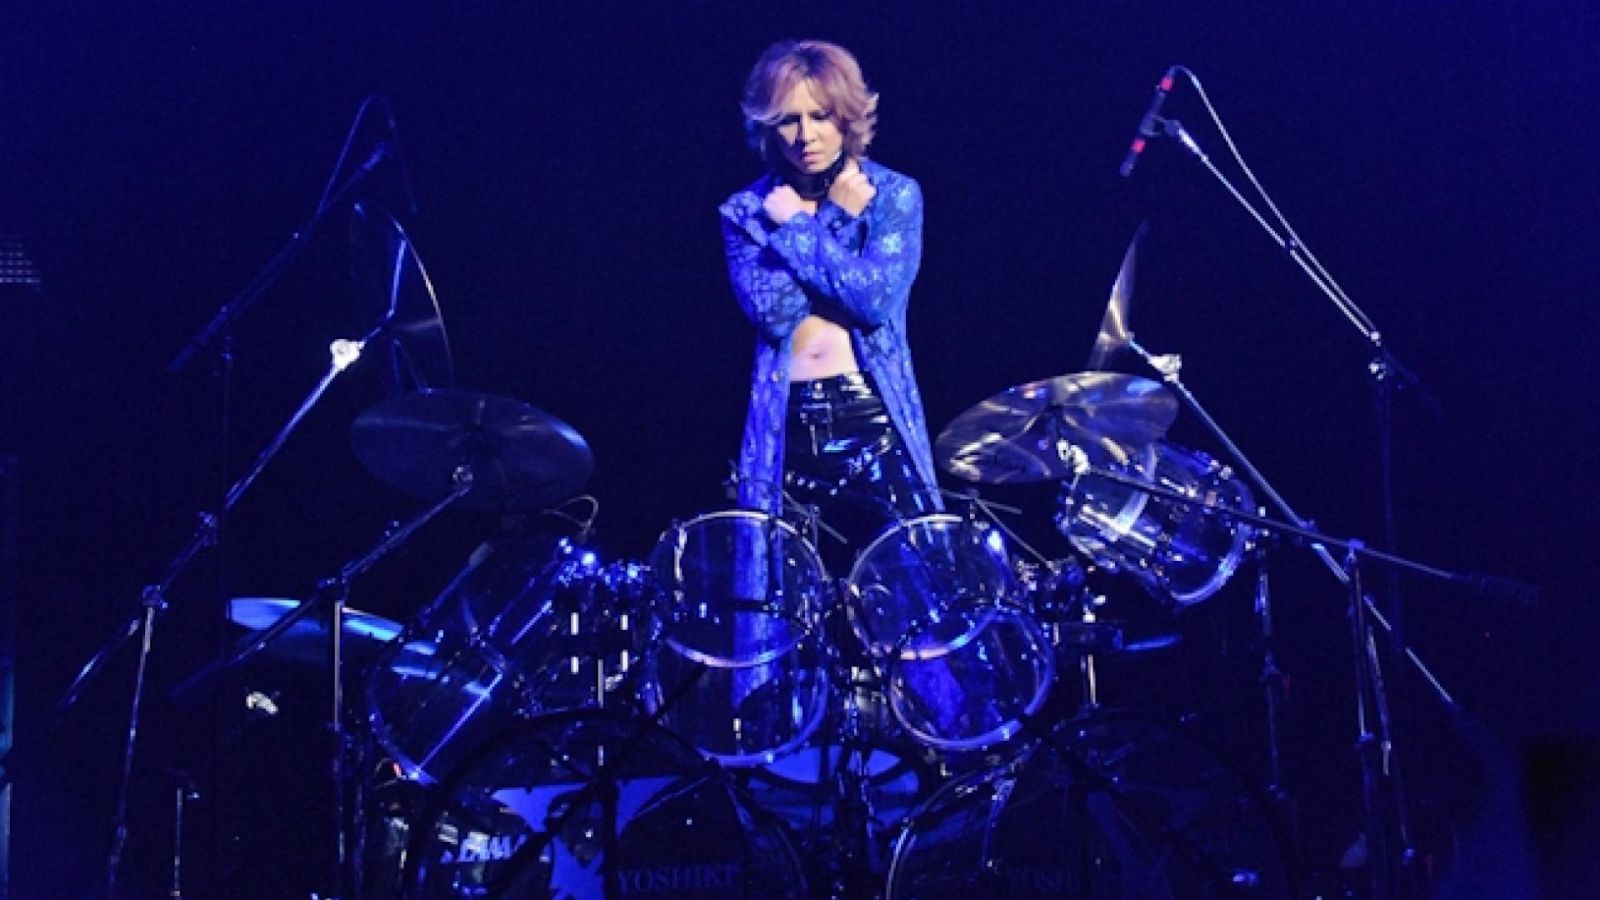 X JAPAN's Beijing Concert Cancelled © Vanessa Aubry